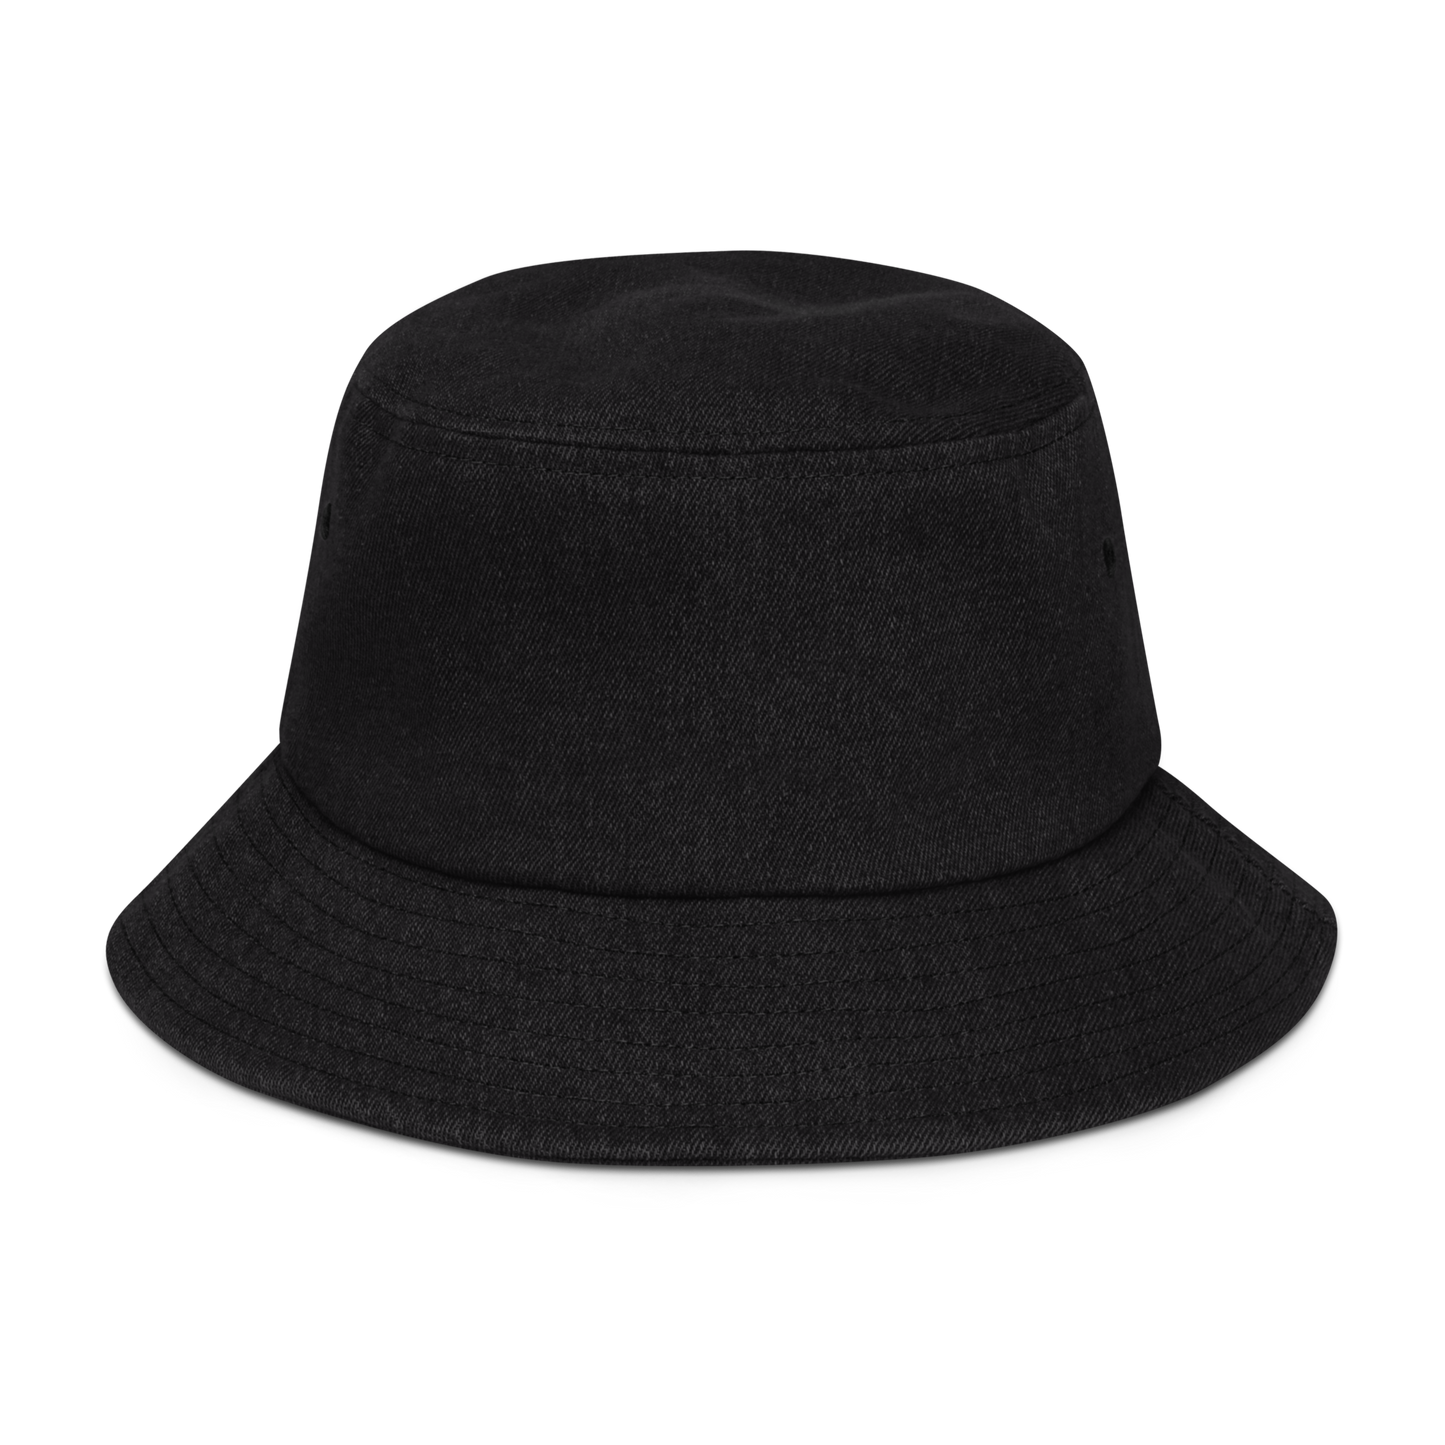 Mr Foreman / Denim bucket hat